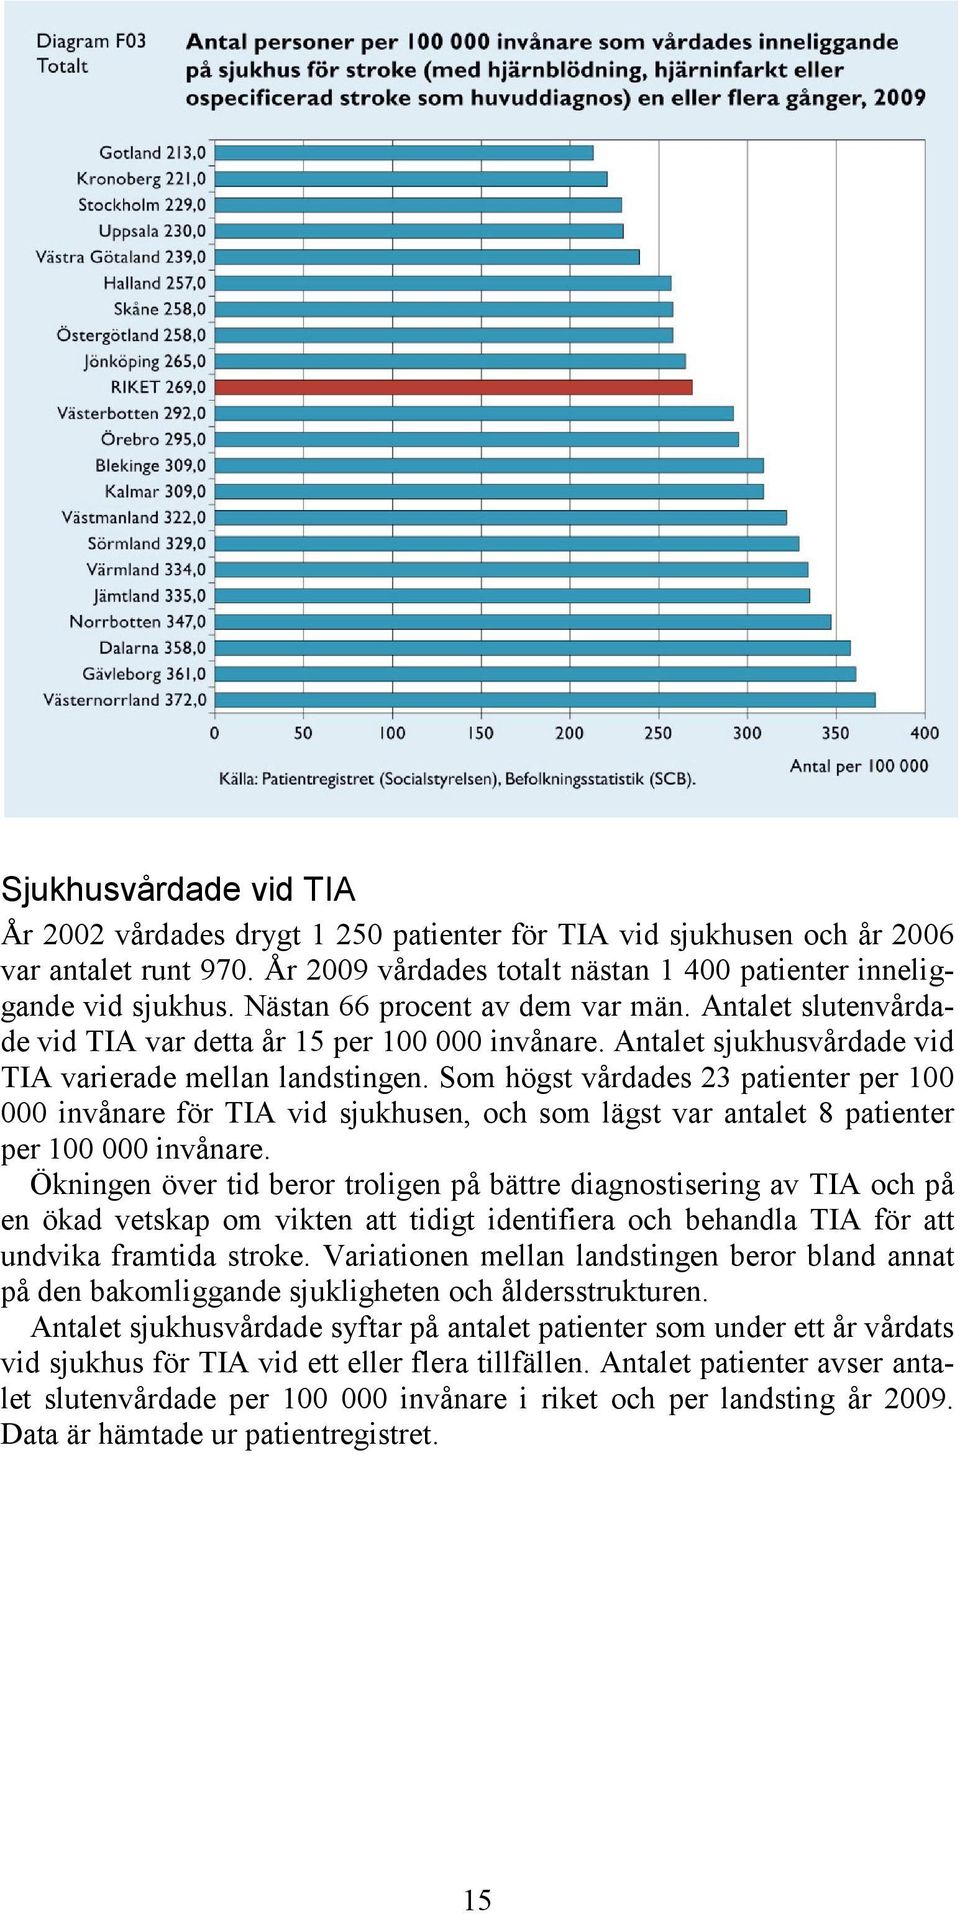 Som högst vårdades 23 patienter per 100 000 invånare för TIA vid sjukhusen, och som lägst var antalet 8 patienter per 100 000 invånare.